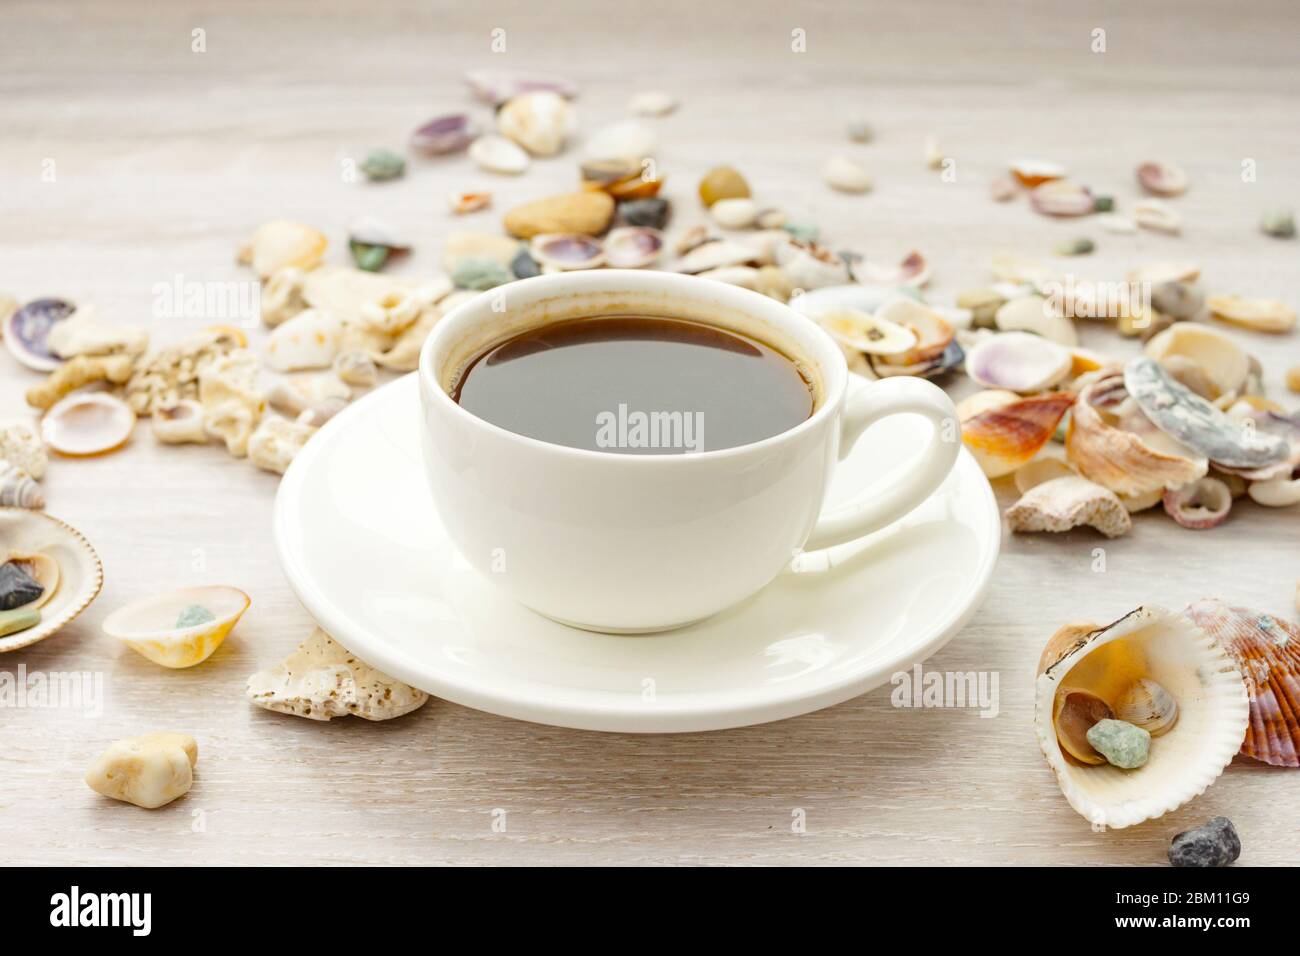 Café noir expresso chaud dans une tasse blanche, soucoupe sur table rustique en bois avec coquillages, galets Banque D'Images